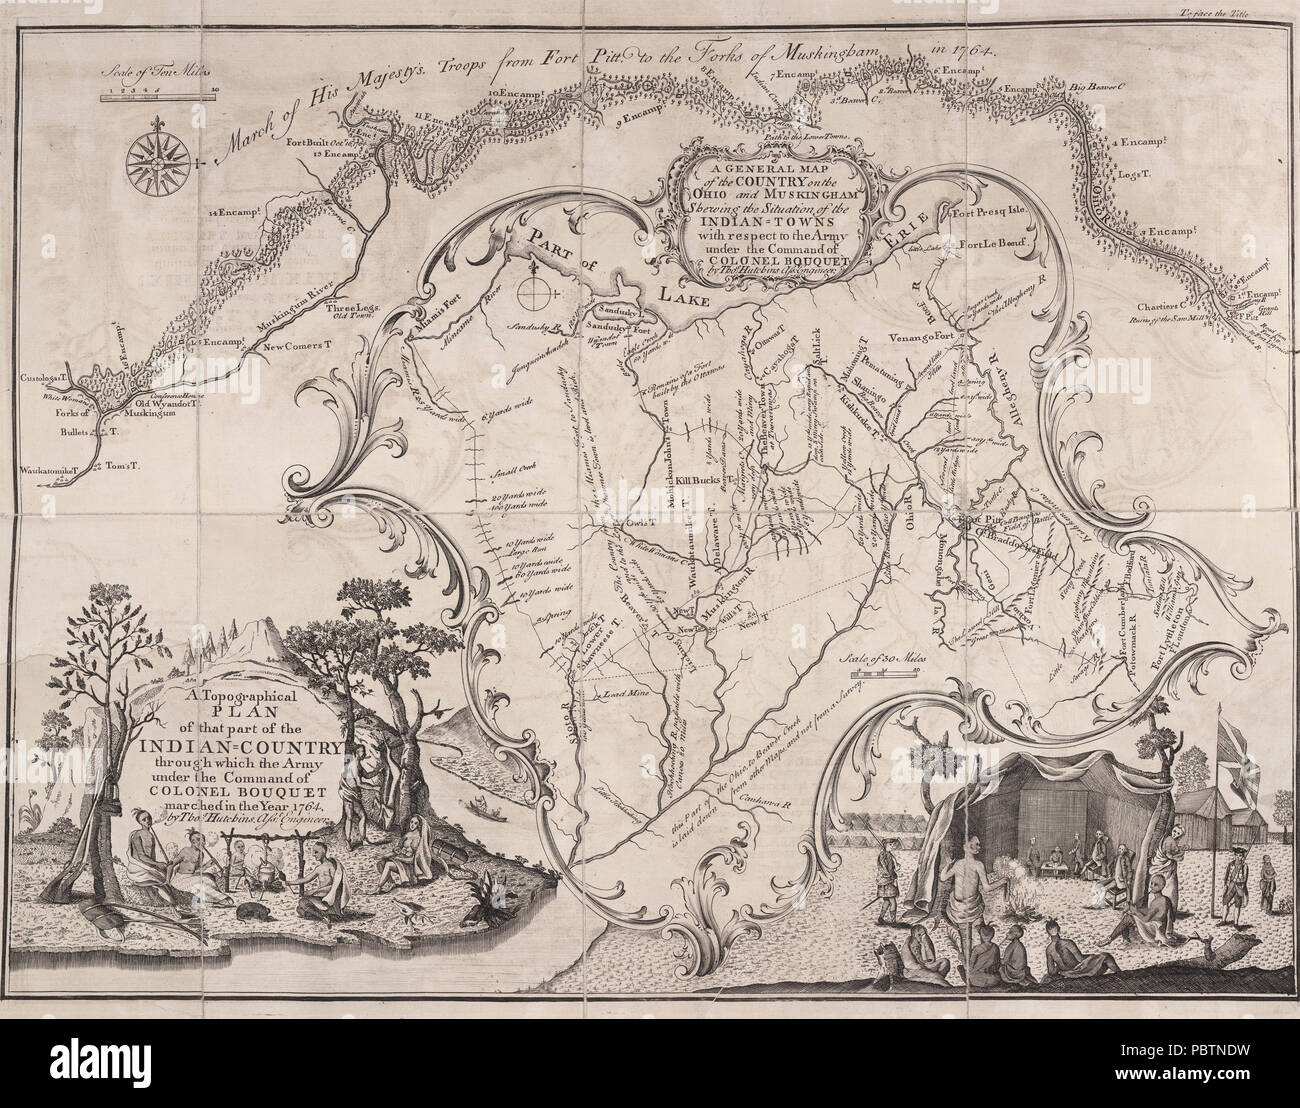 Eine Topographie des Teils der indischen Land durch die Armee unter dem Kommando von Oberst Blumenstrauß marschierten im Jahr 1764 von Thomas Hutchins. Assistant Engineer - Karte der Britischen Armee 1764 Stockfoto